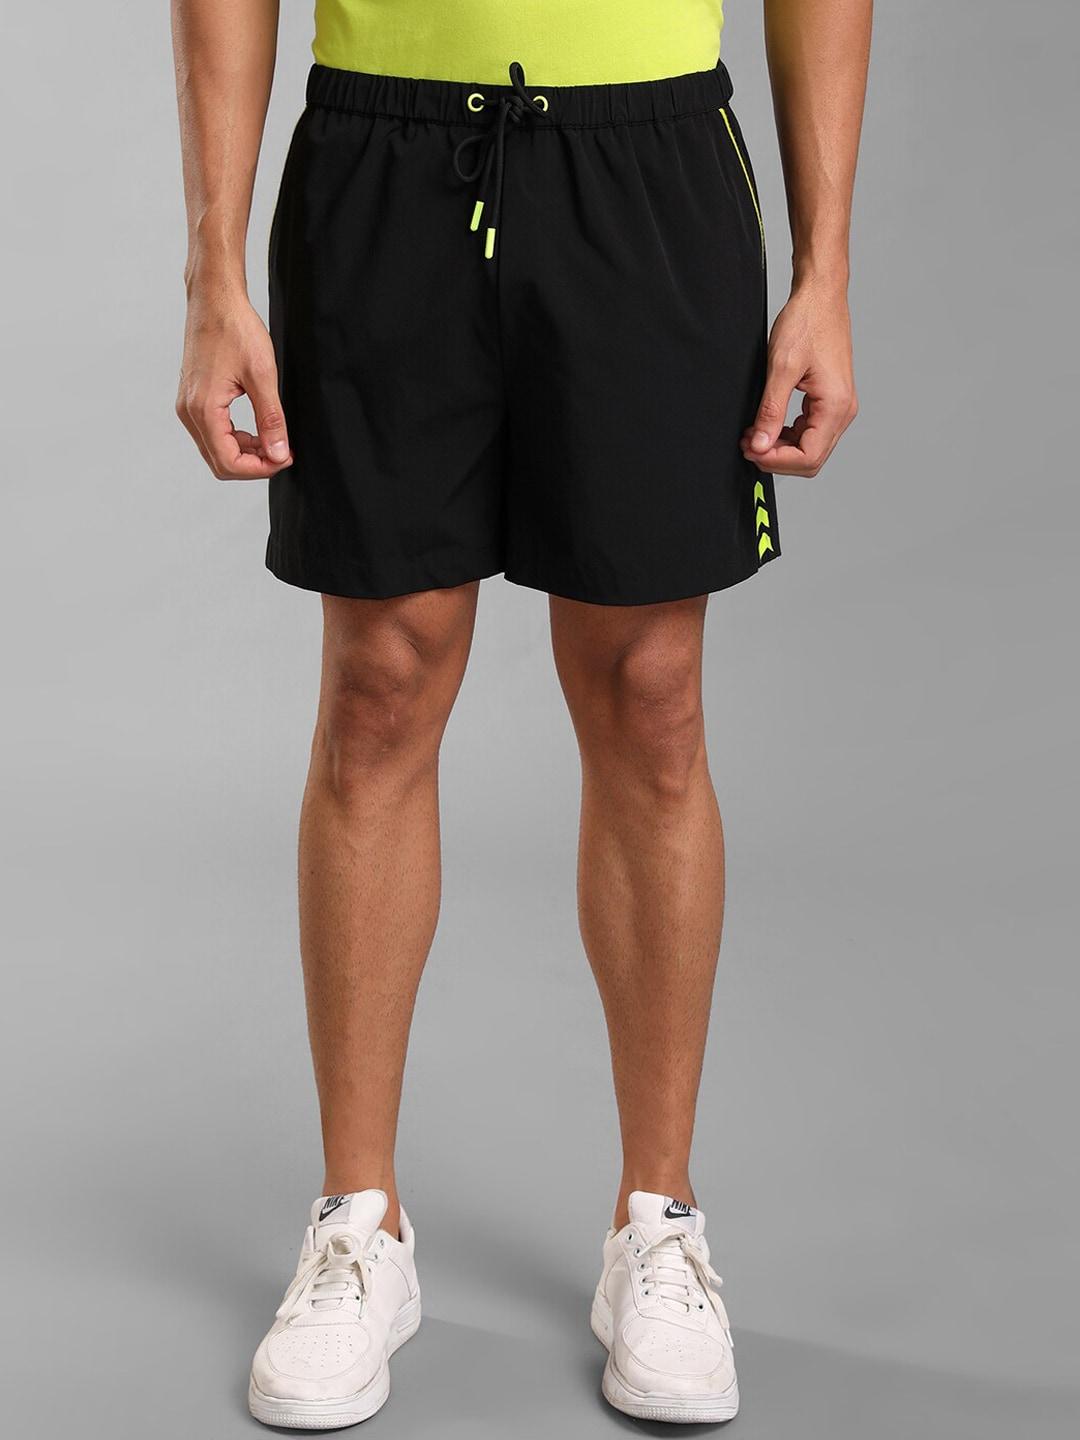 kz07-by-kazo-men-black-high-rise-sports-shorts